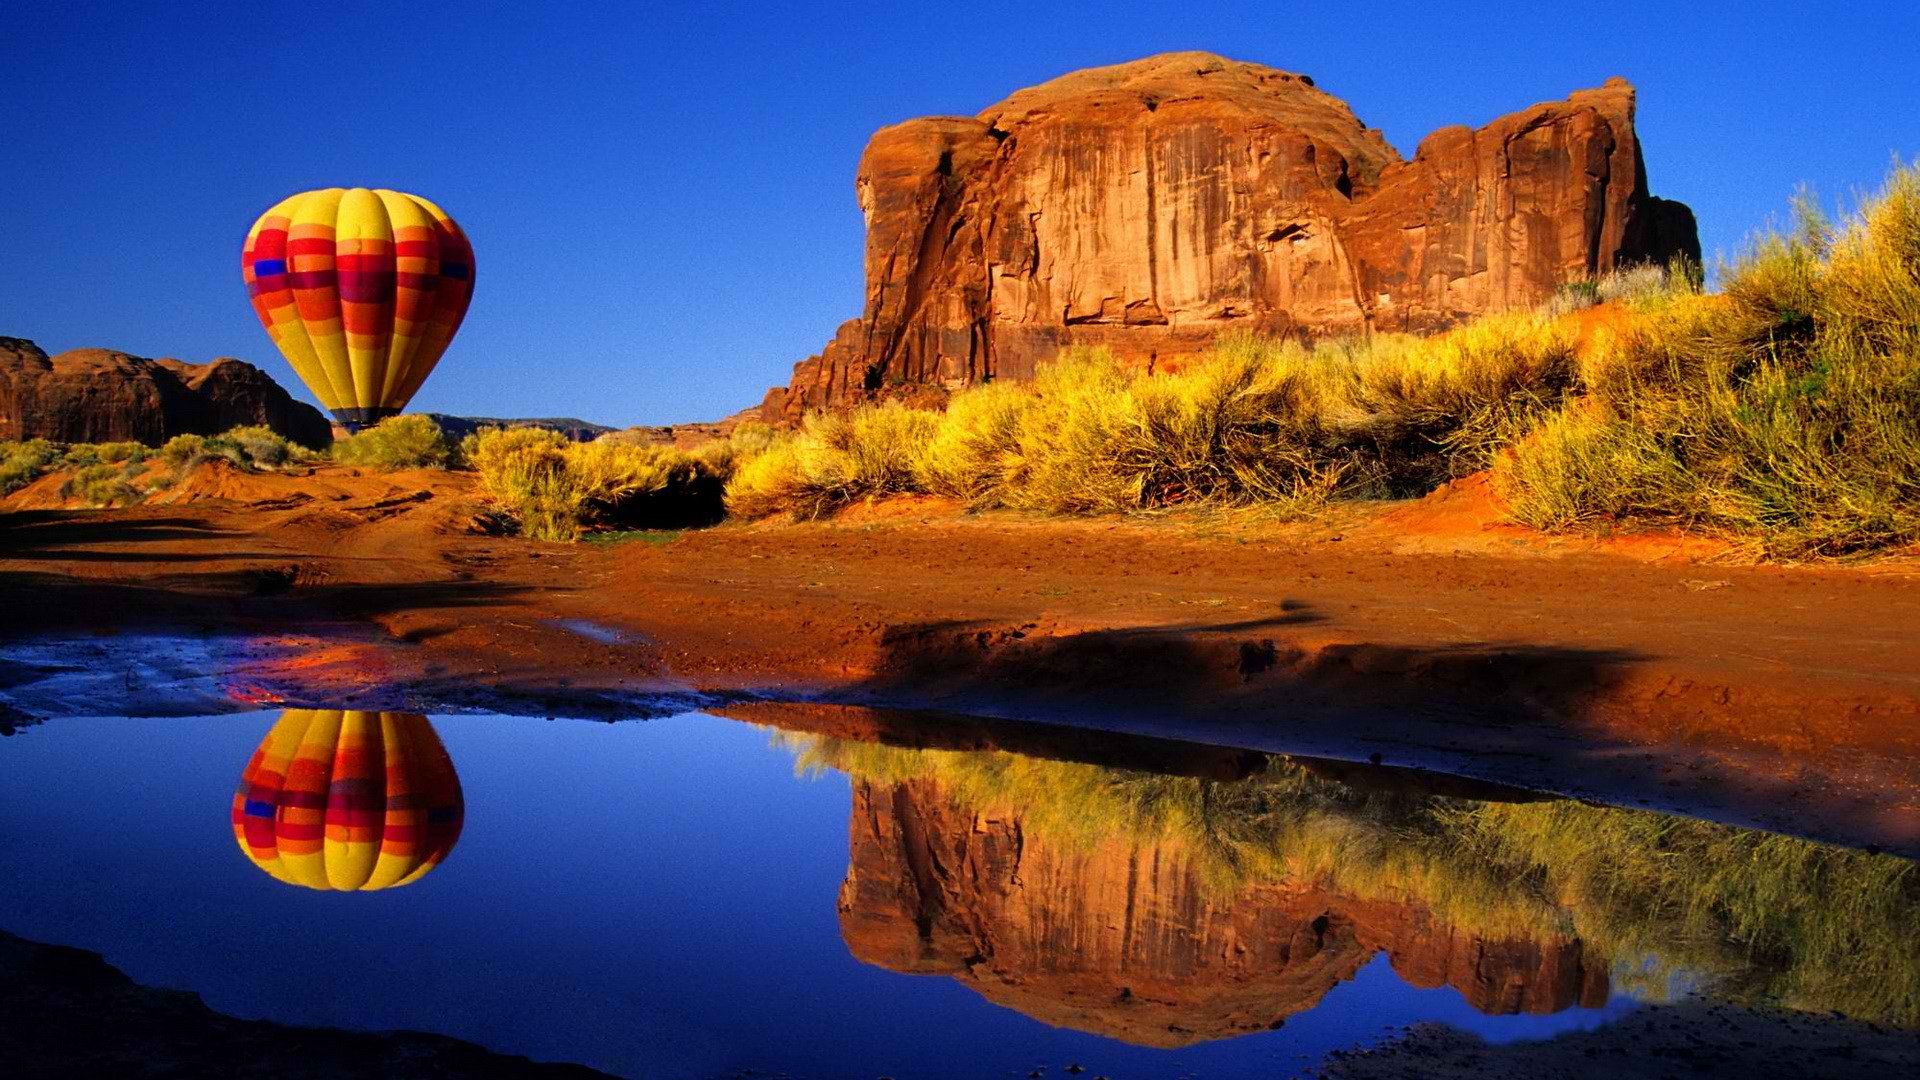 landscapes, Arizona, hot air balloons, rock formations - desktop wallpaper